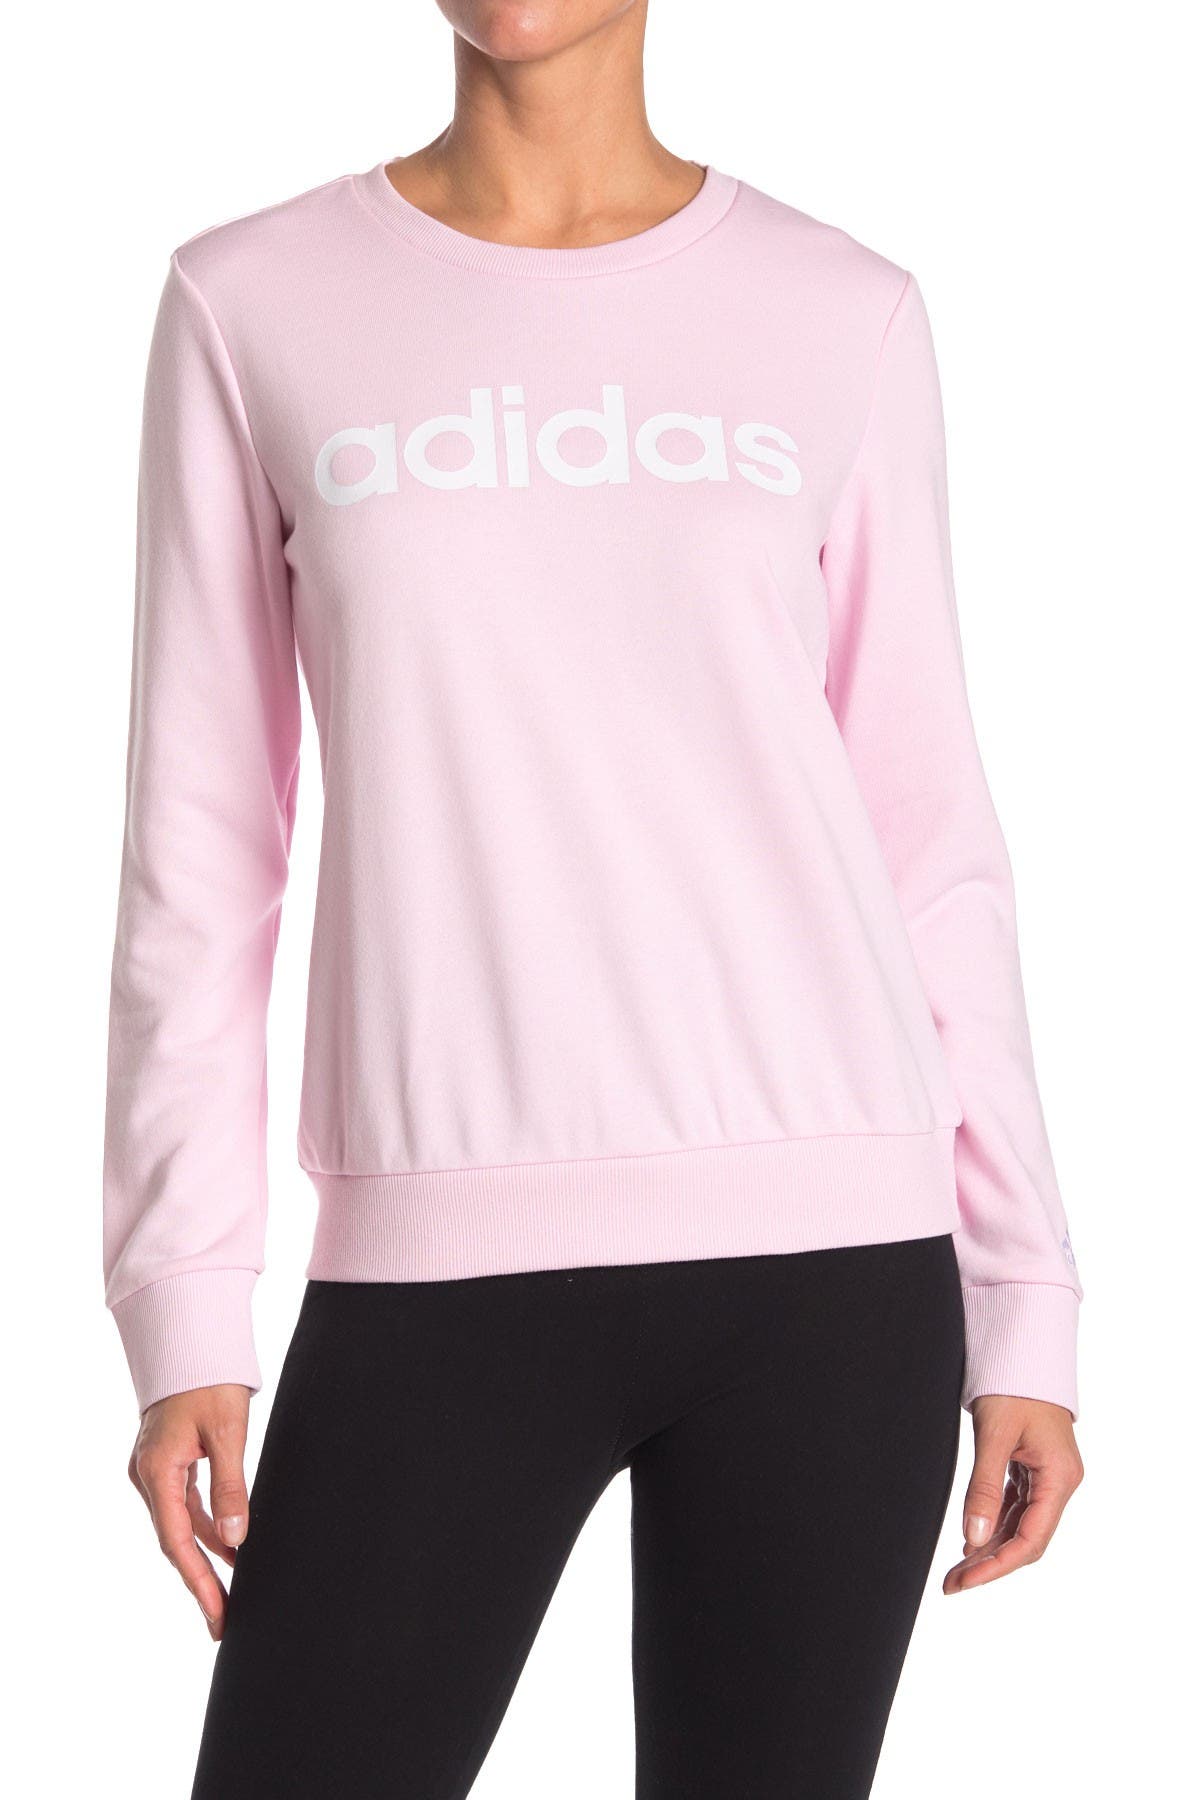 Adidas Originals Essentials Sweatshirt In Bright Pink2